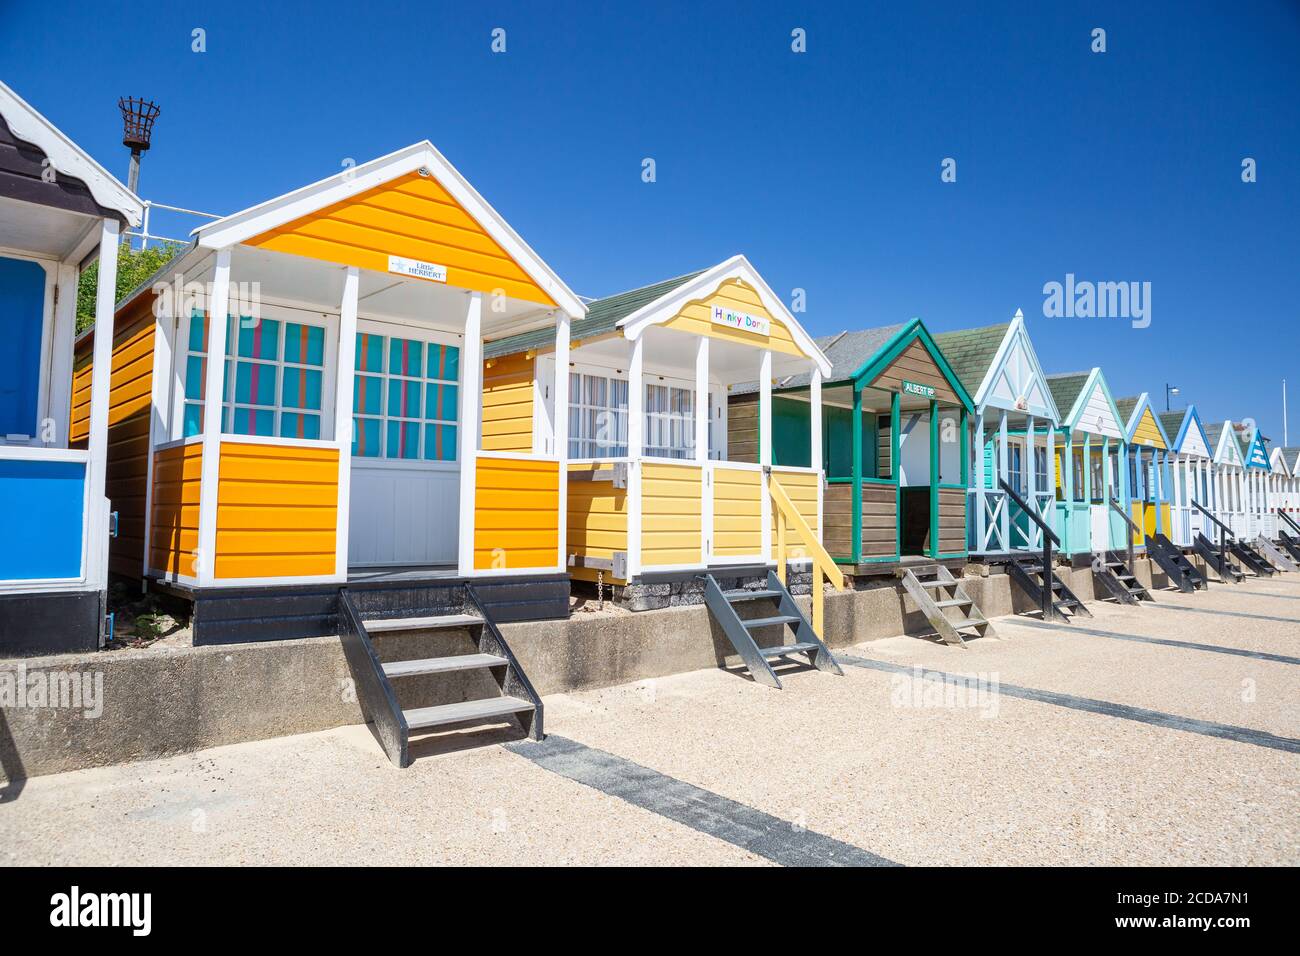 Cabanes de plage colorées, Southwold, Suffolk, Royaume-Uni. Destination de vacances en bord de mer britannique. Banque D'Images